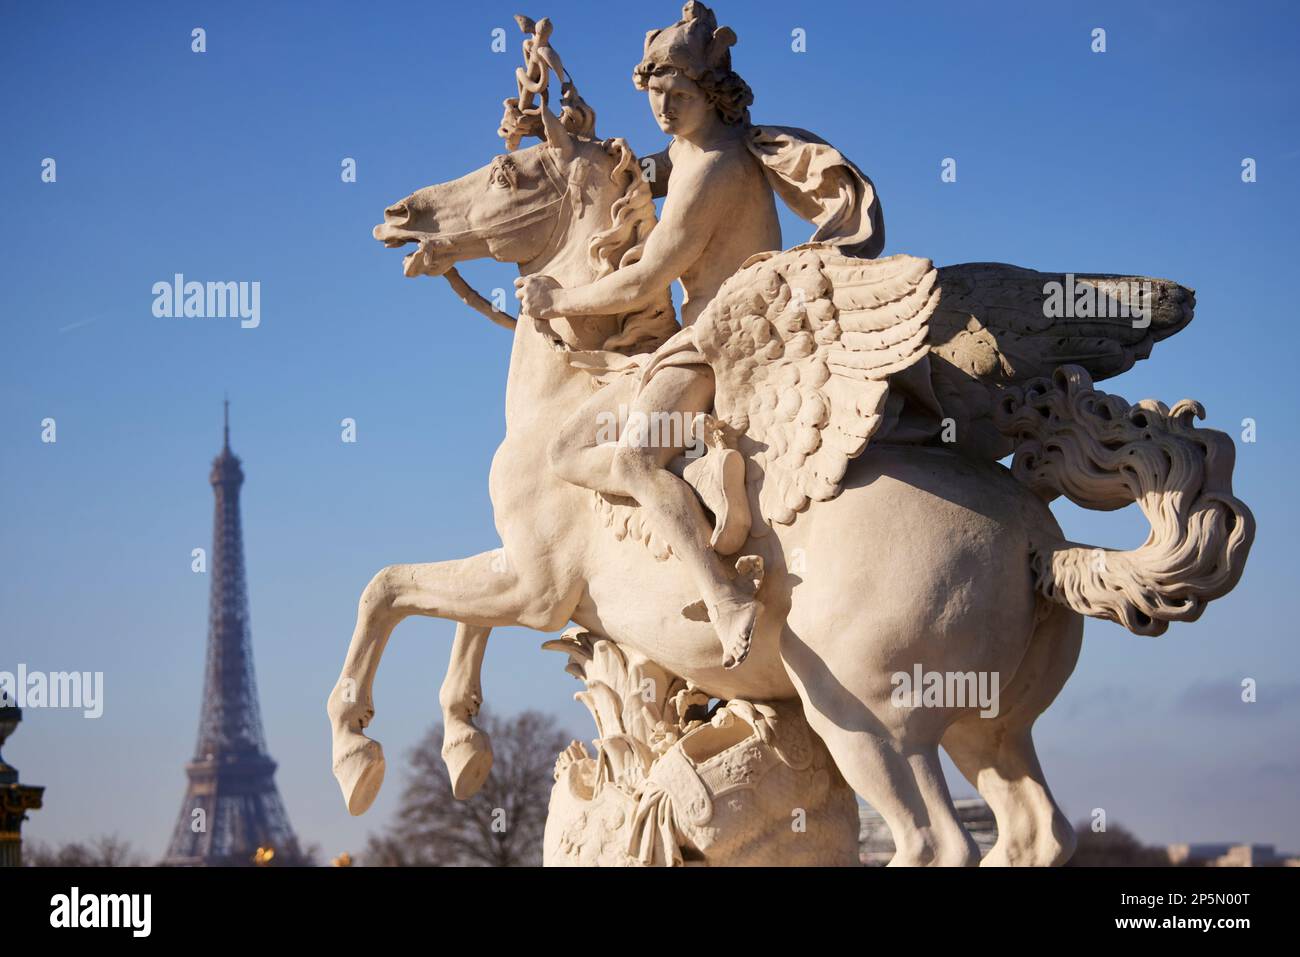 La statua di Pegaso a Parigi, statua equestre chiamata Mercure Monte sur Pegase, scolpita da Antoine Coysevox. Foto Stock